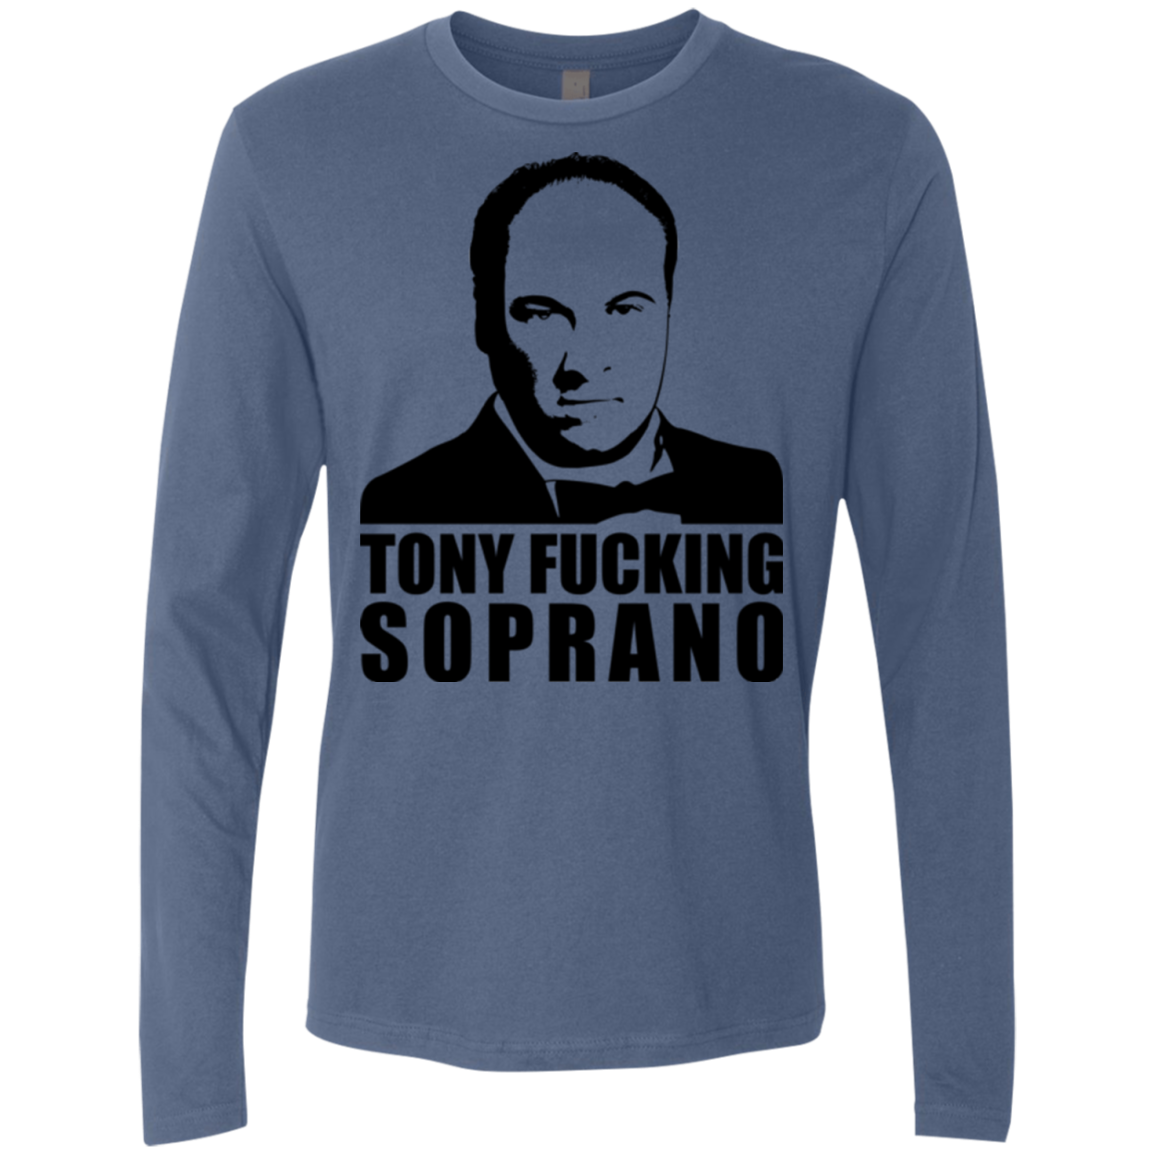 Tony Fucking Soprano Men's Premium Long Sleeve